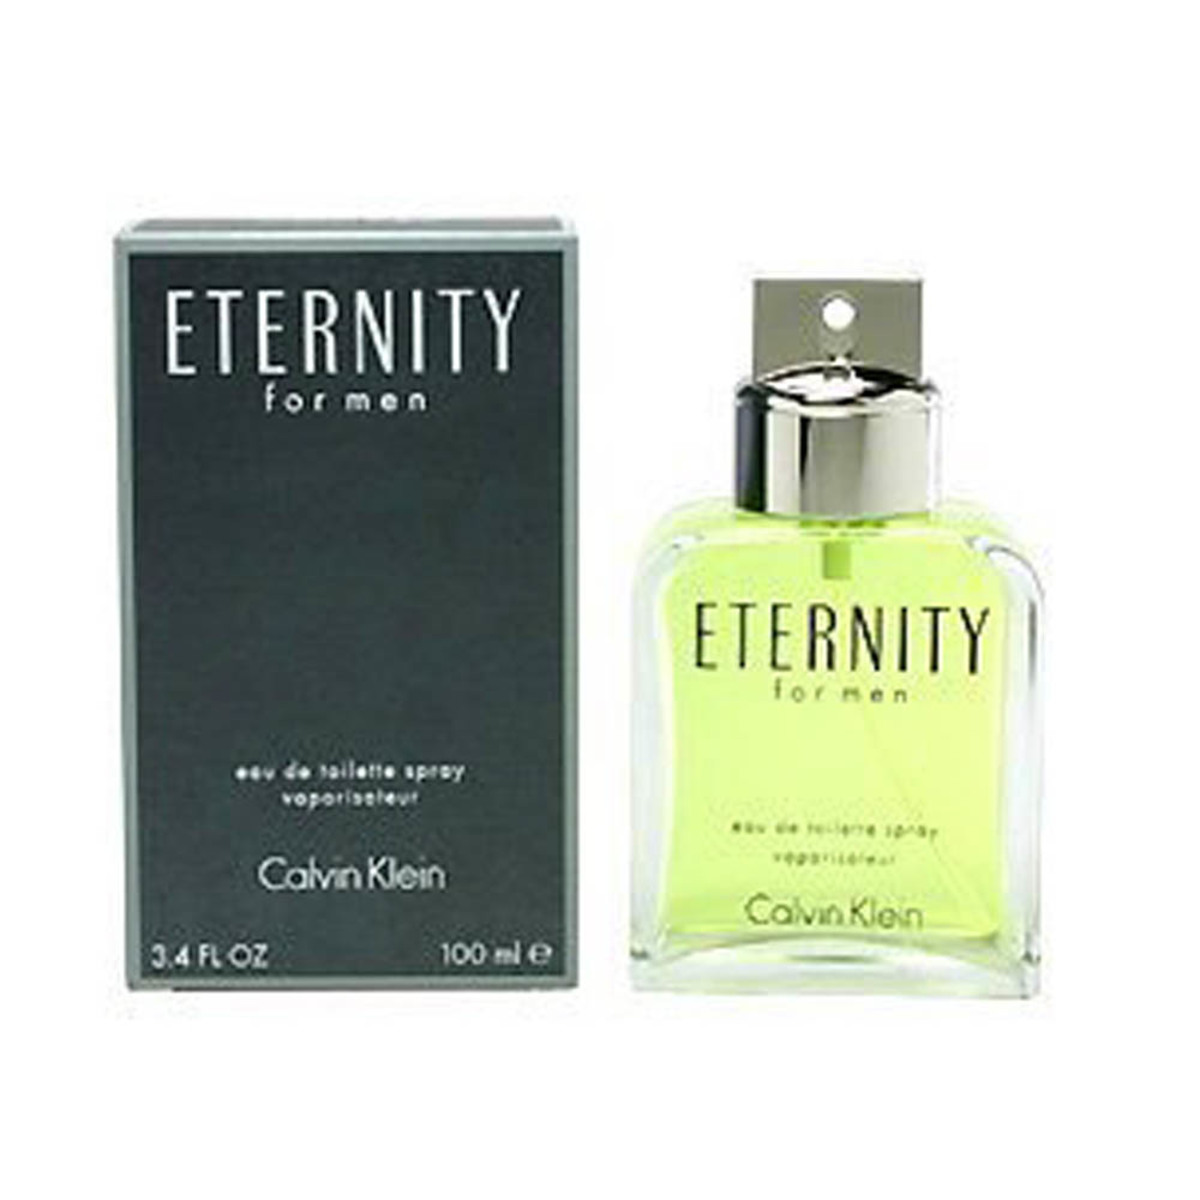 Calvin Klein Eternity EDT Men 100 ml Online at Best Price | Premium ...